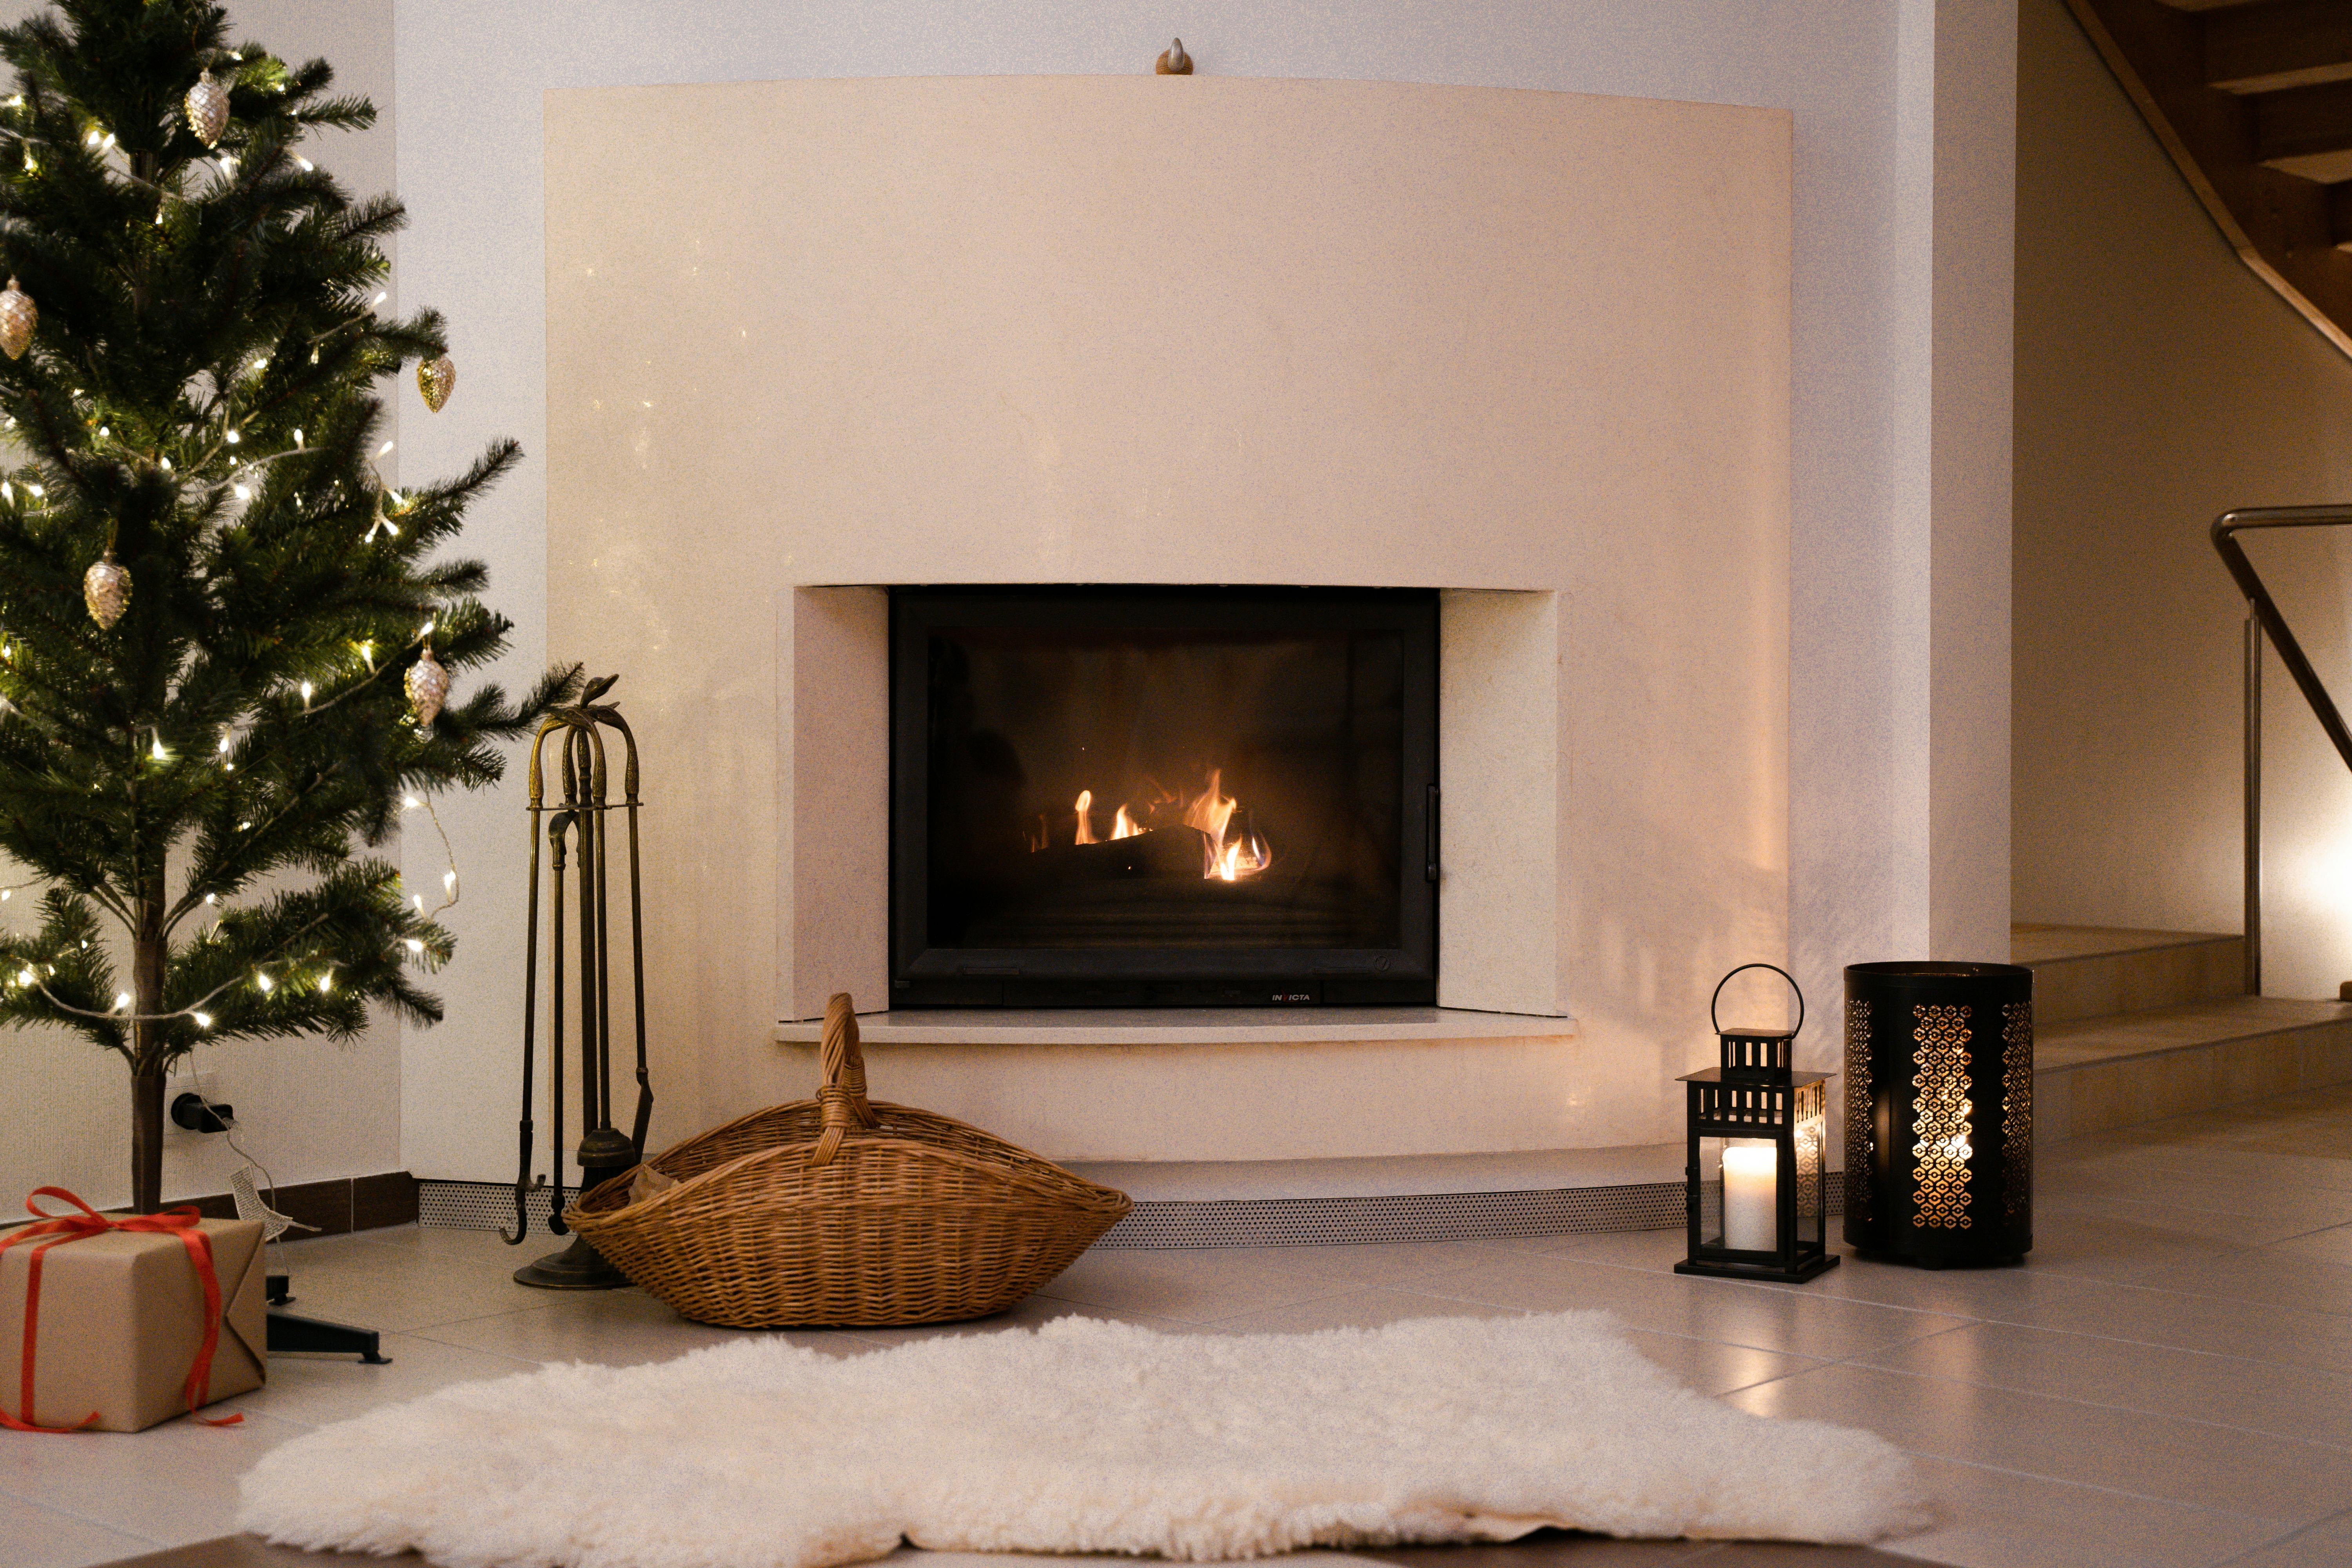 A modern fireplace